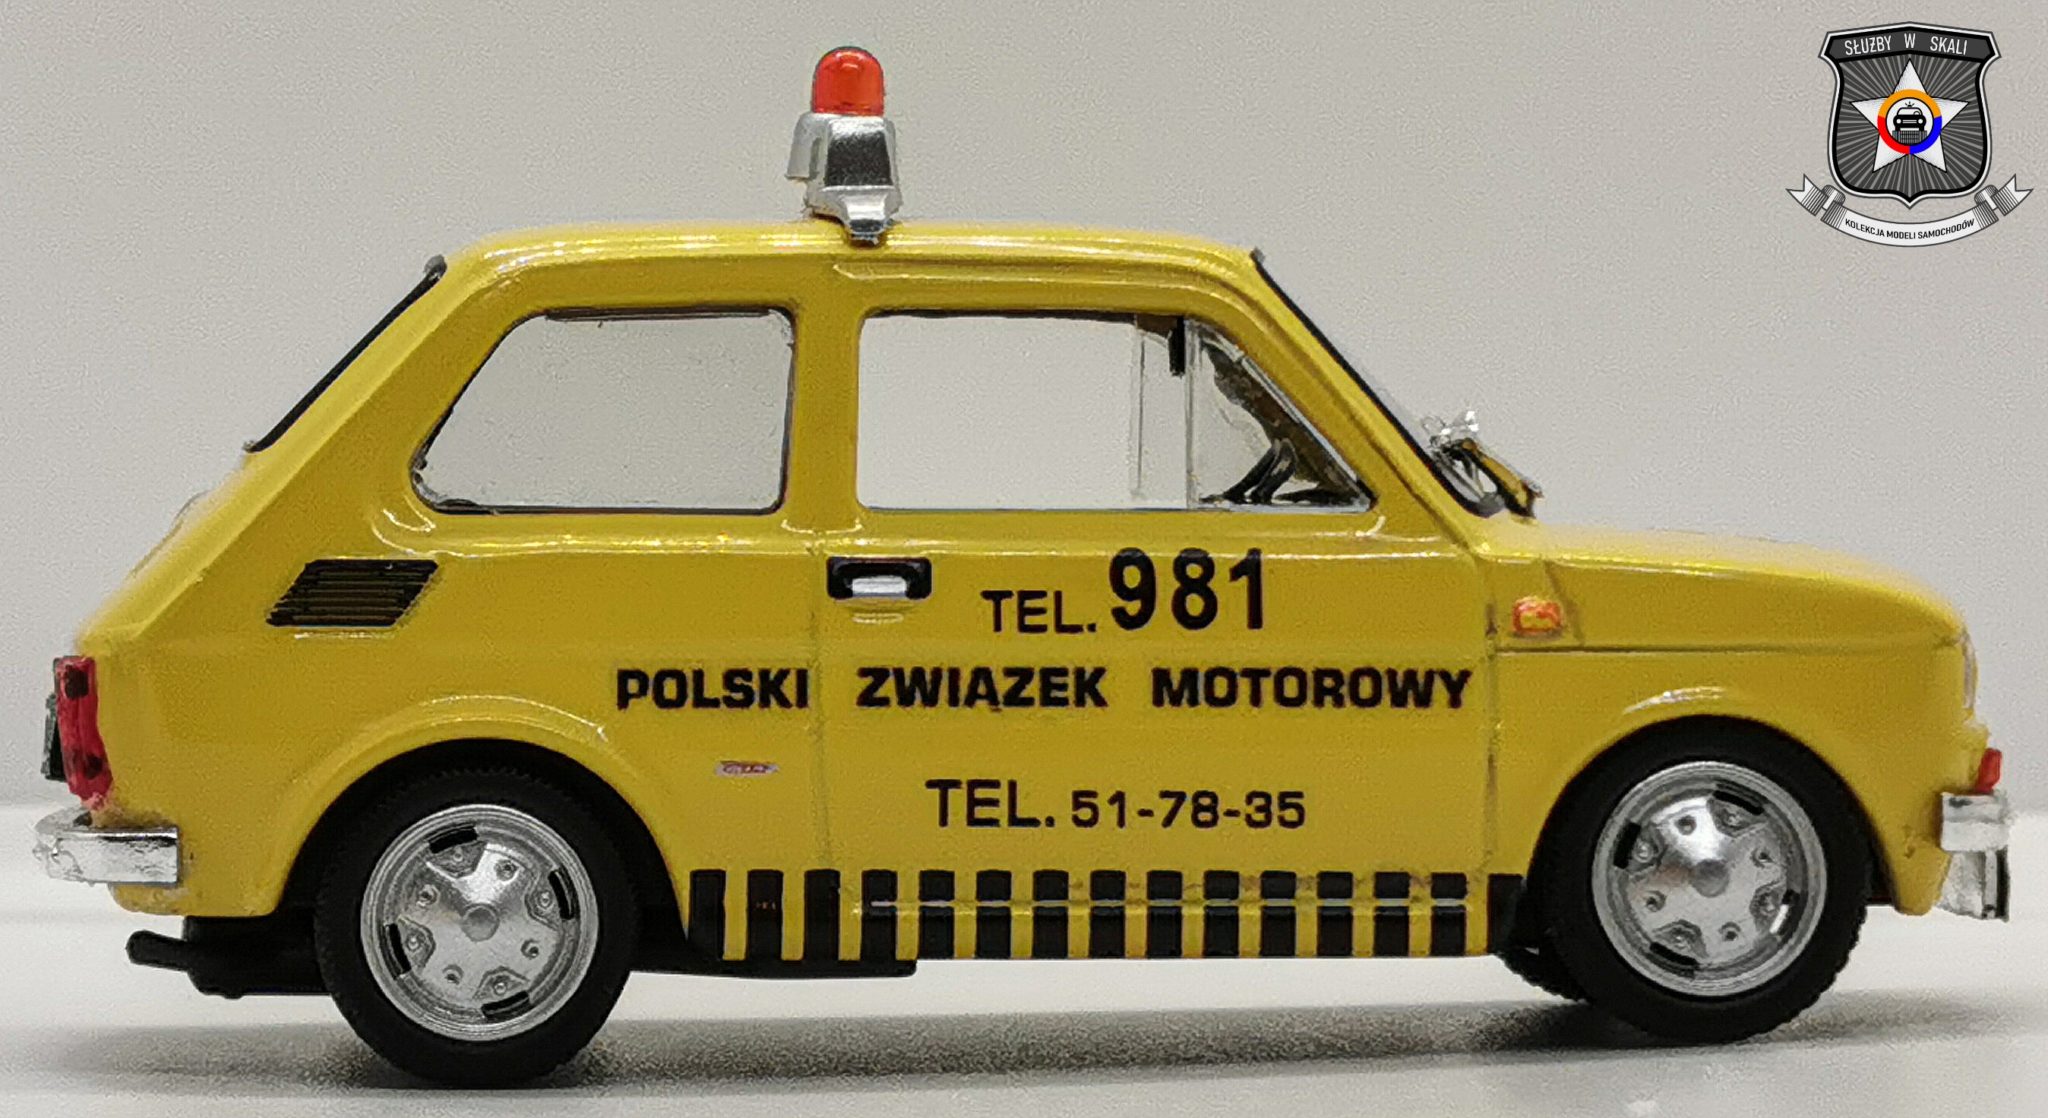 Polski Fiat 126p Polski Związek Motorowy (Polska